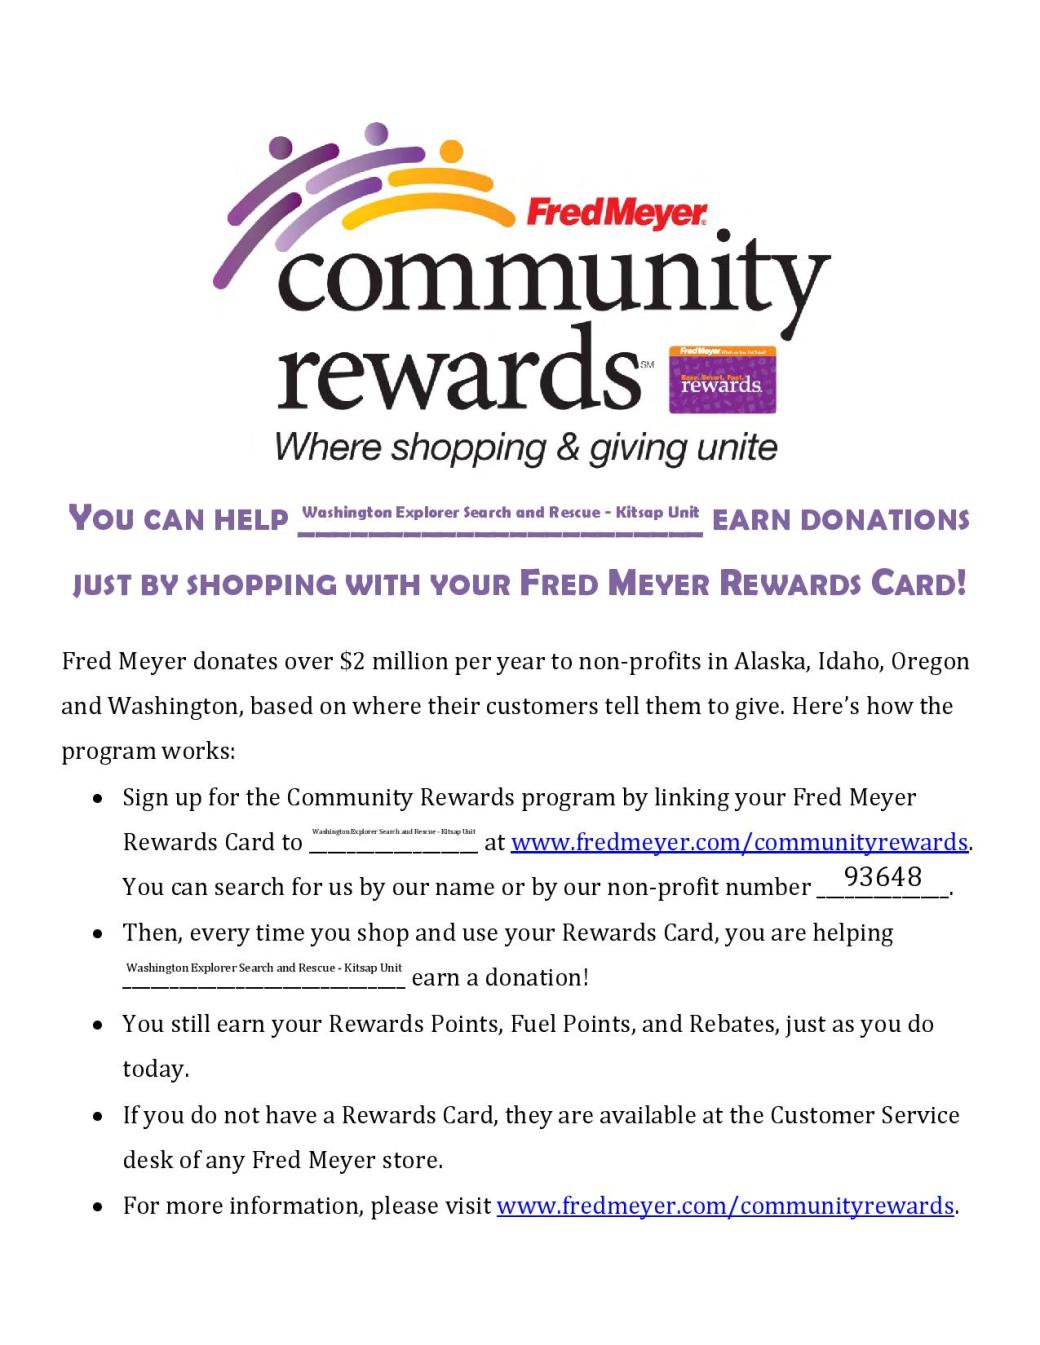 Kitsap WESAR - Fred Meyer Community Rewards Flyer